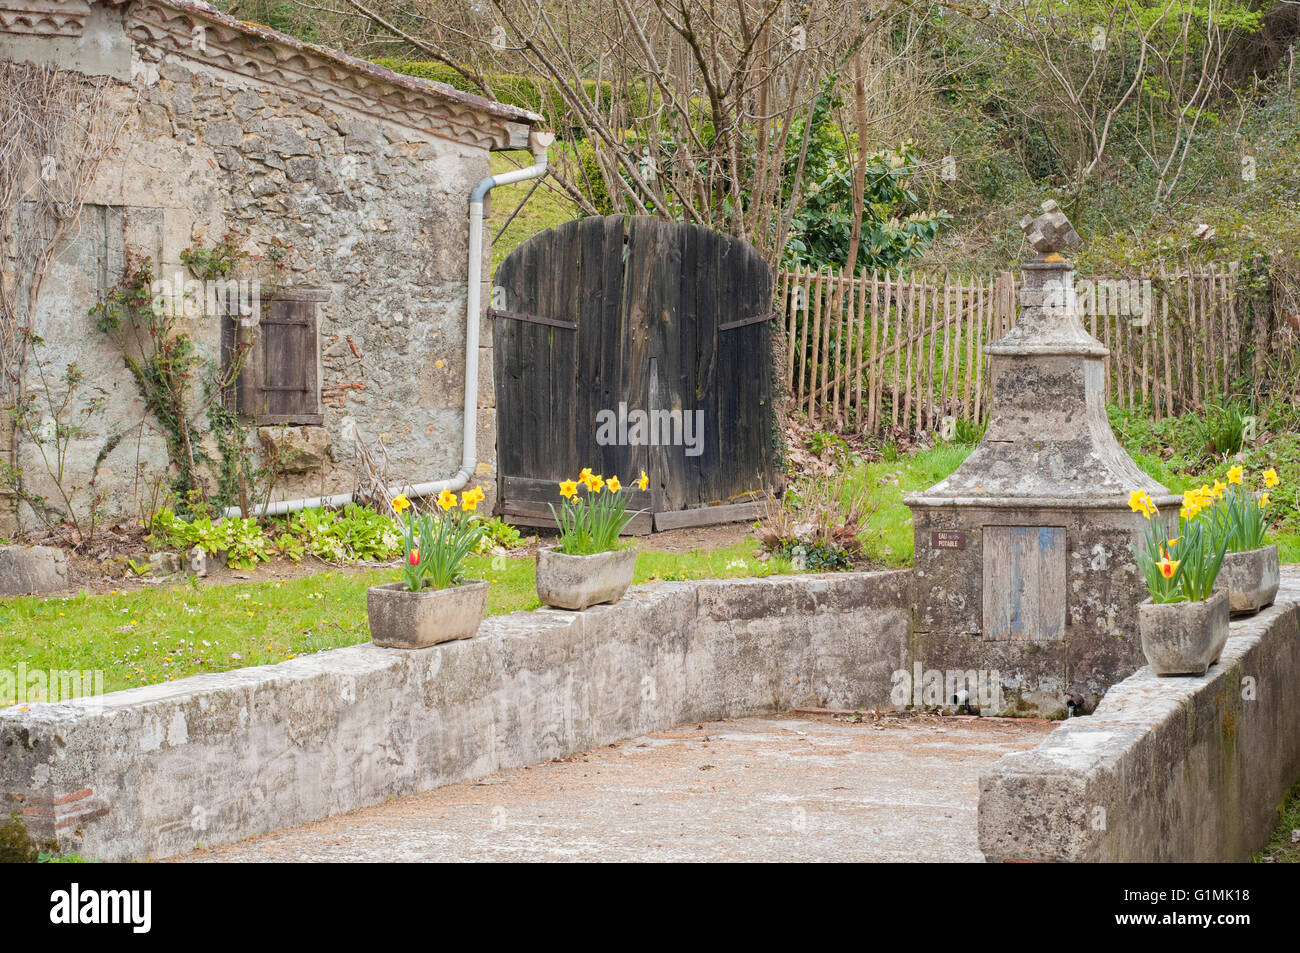 Ancienne fontaine avec jonquilles jaune et rouge dans une pierre jardinières à la ville médiévale de Labastide d'Armagnac. La France. Banque D'Images